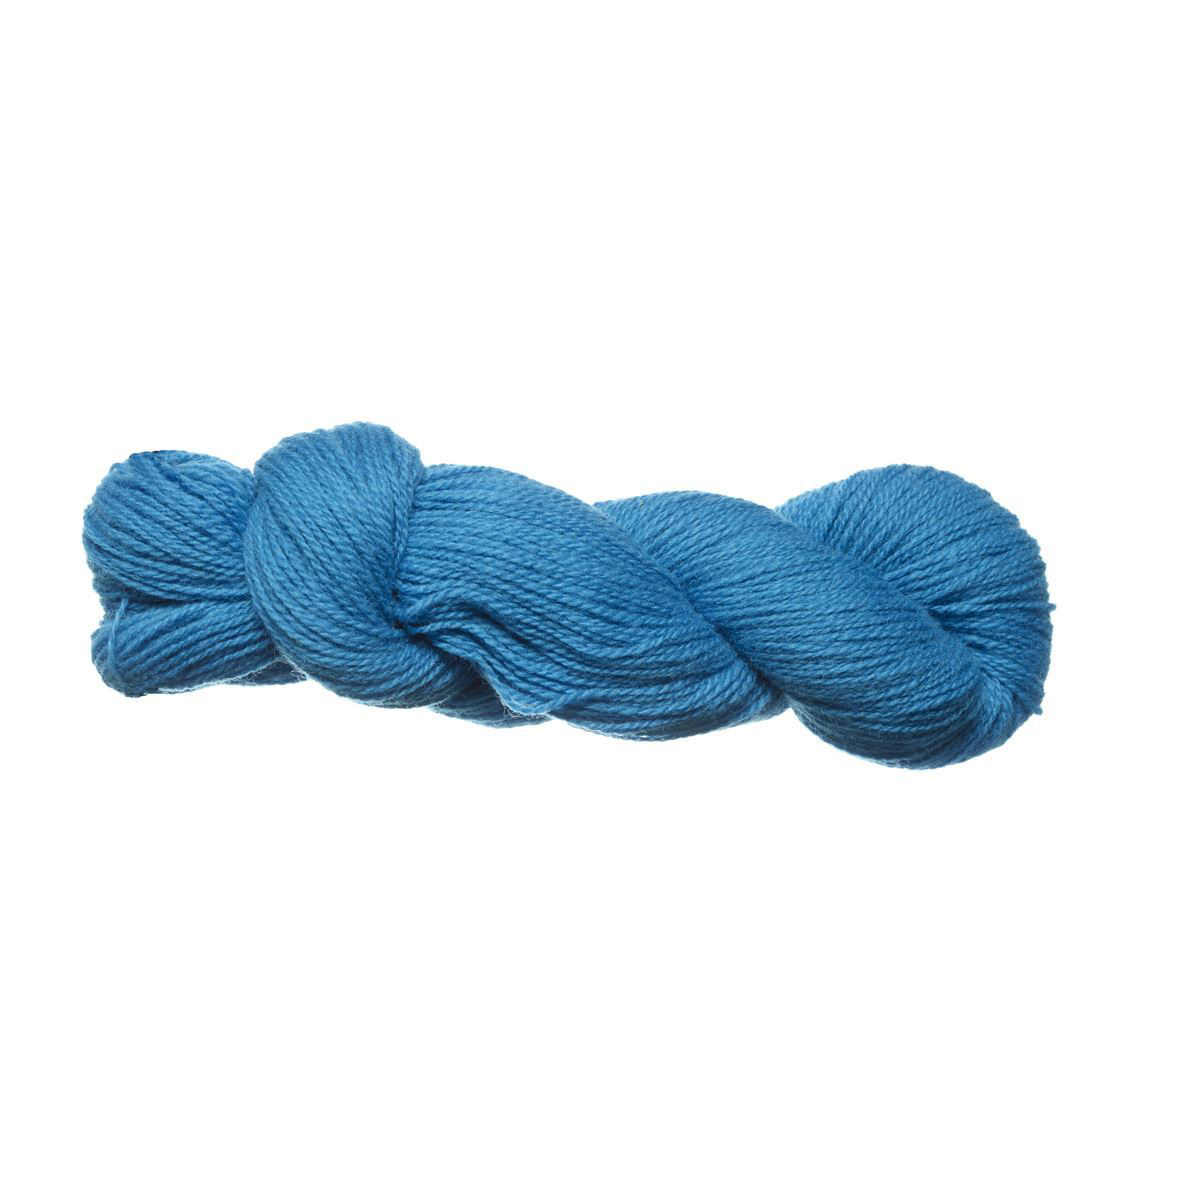 Garnhuset Wool 6/2 - Blue - 5600 - Weaving Yarn